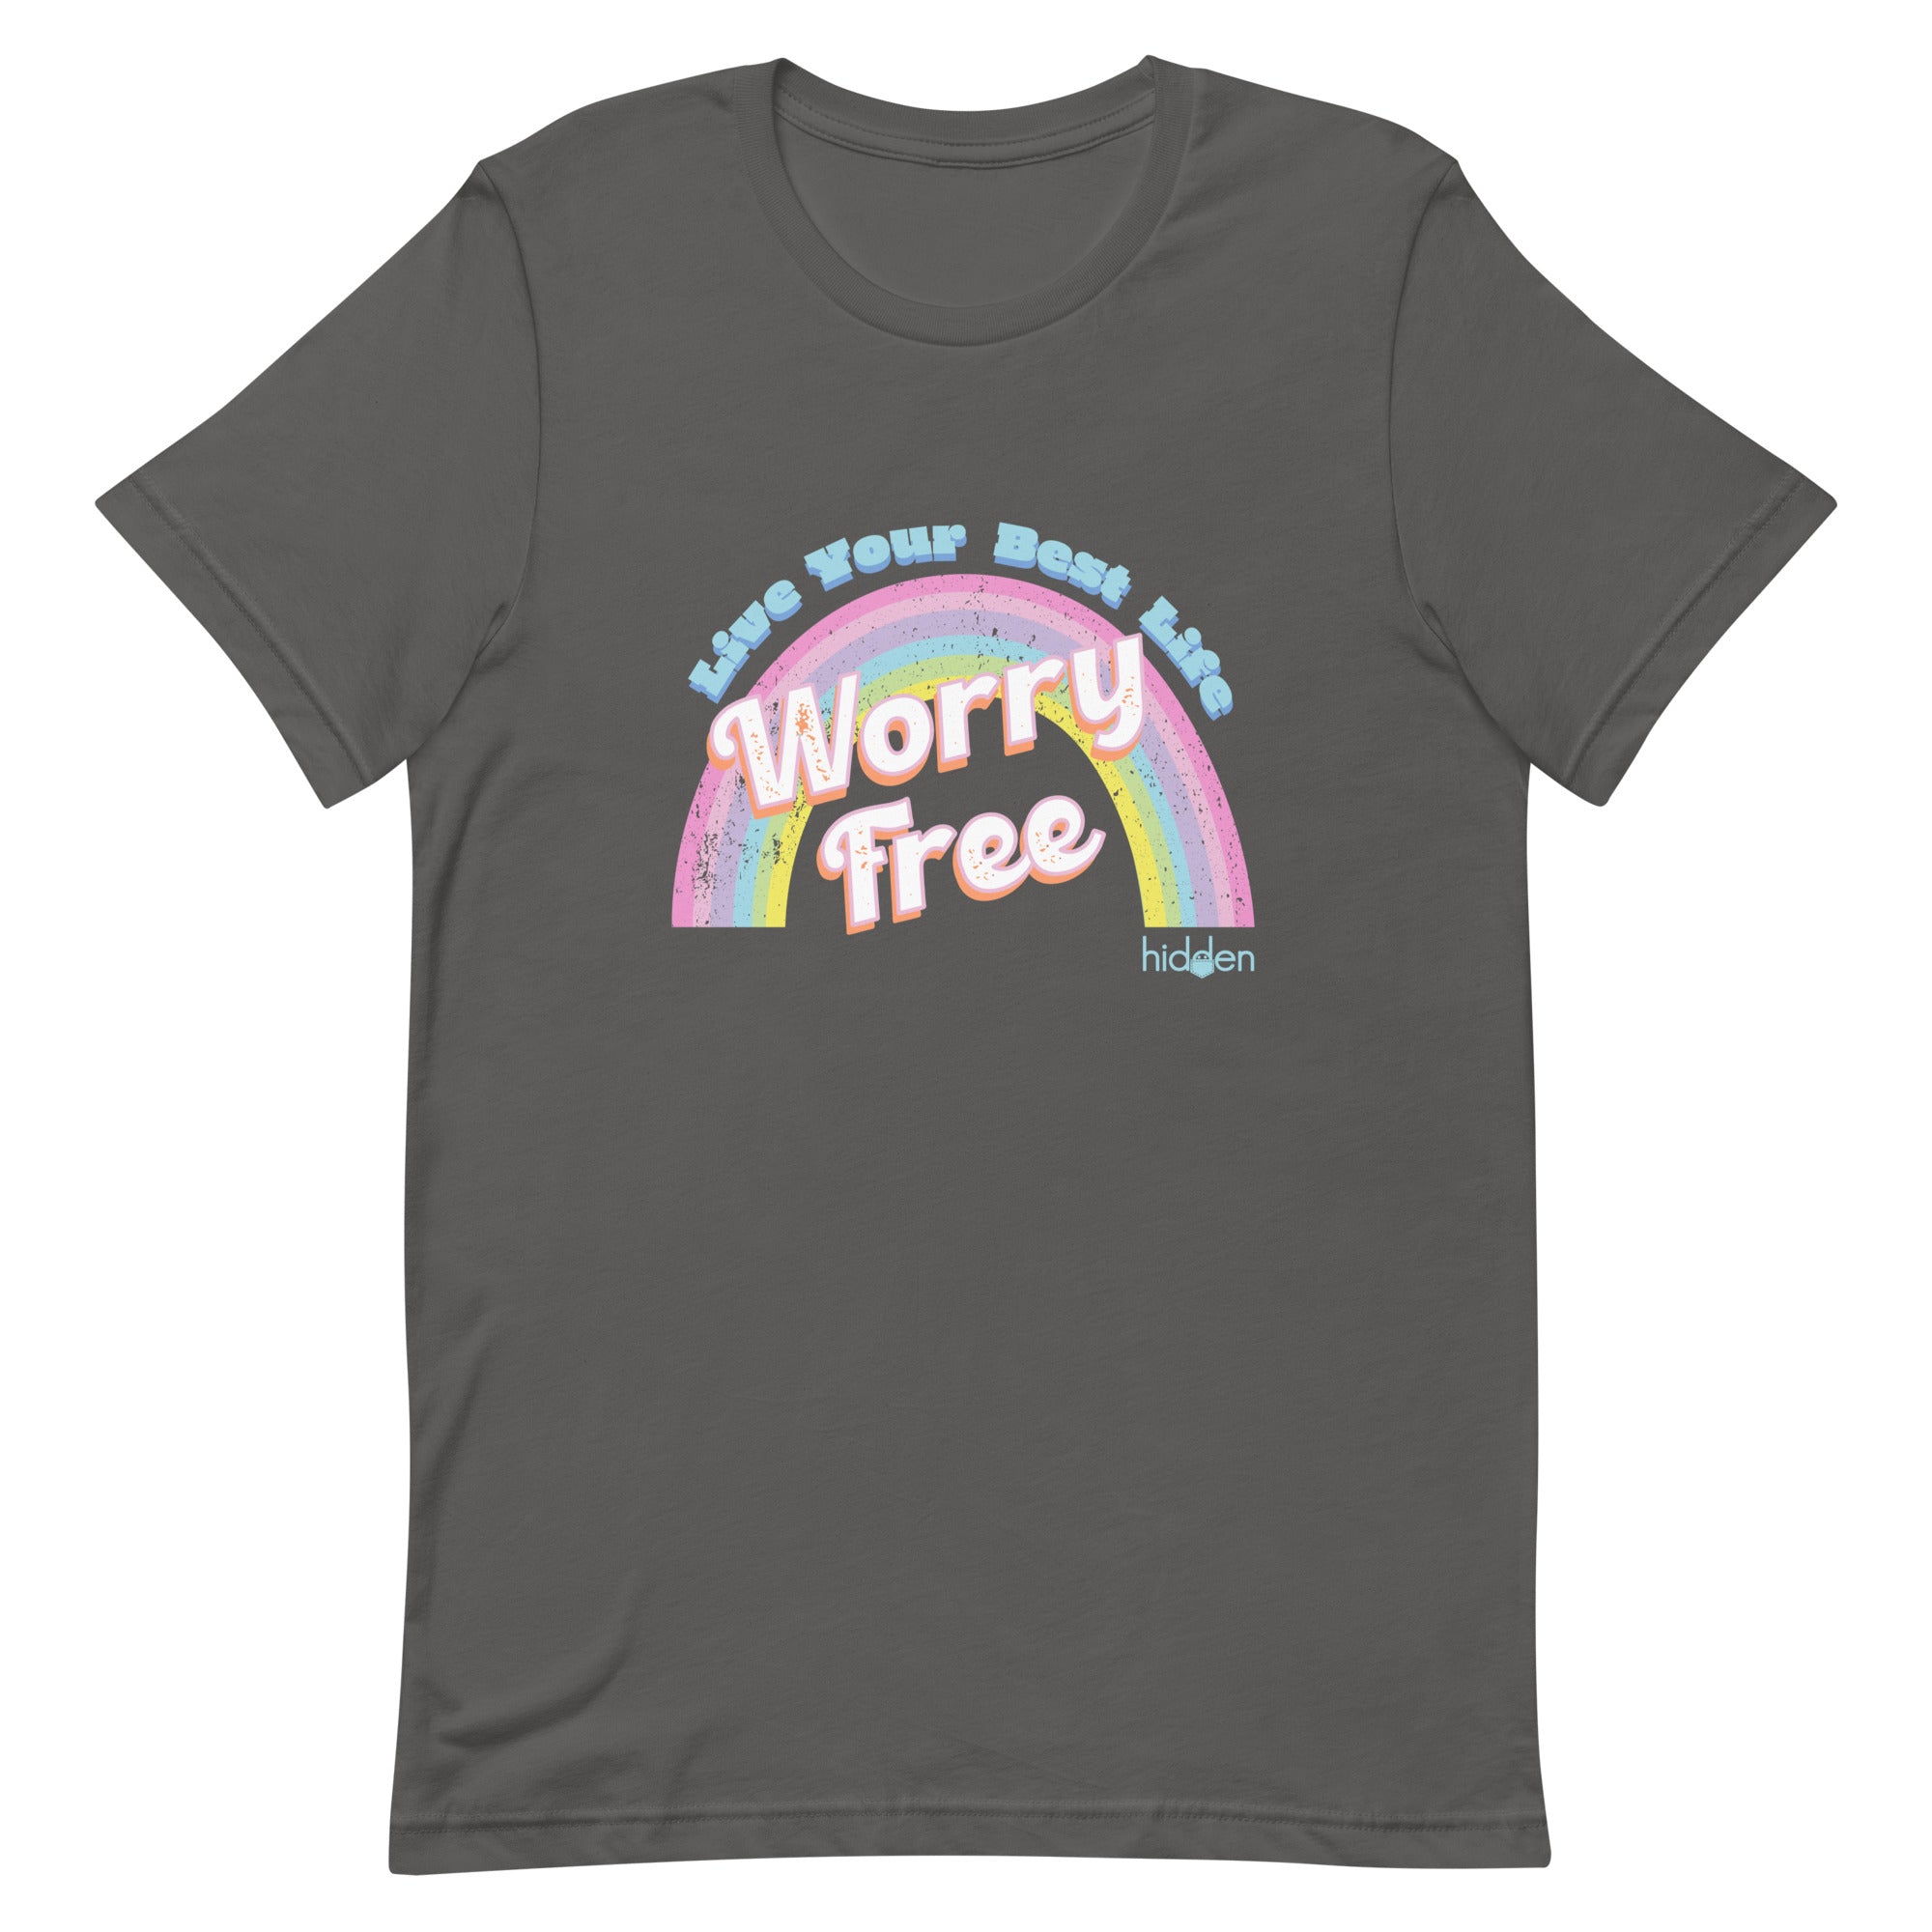 Unisex T-shirt "Worry Free"